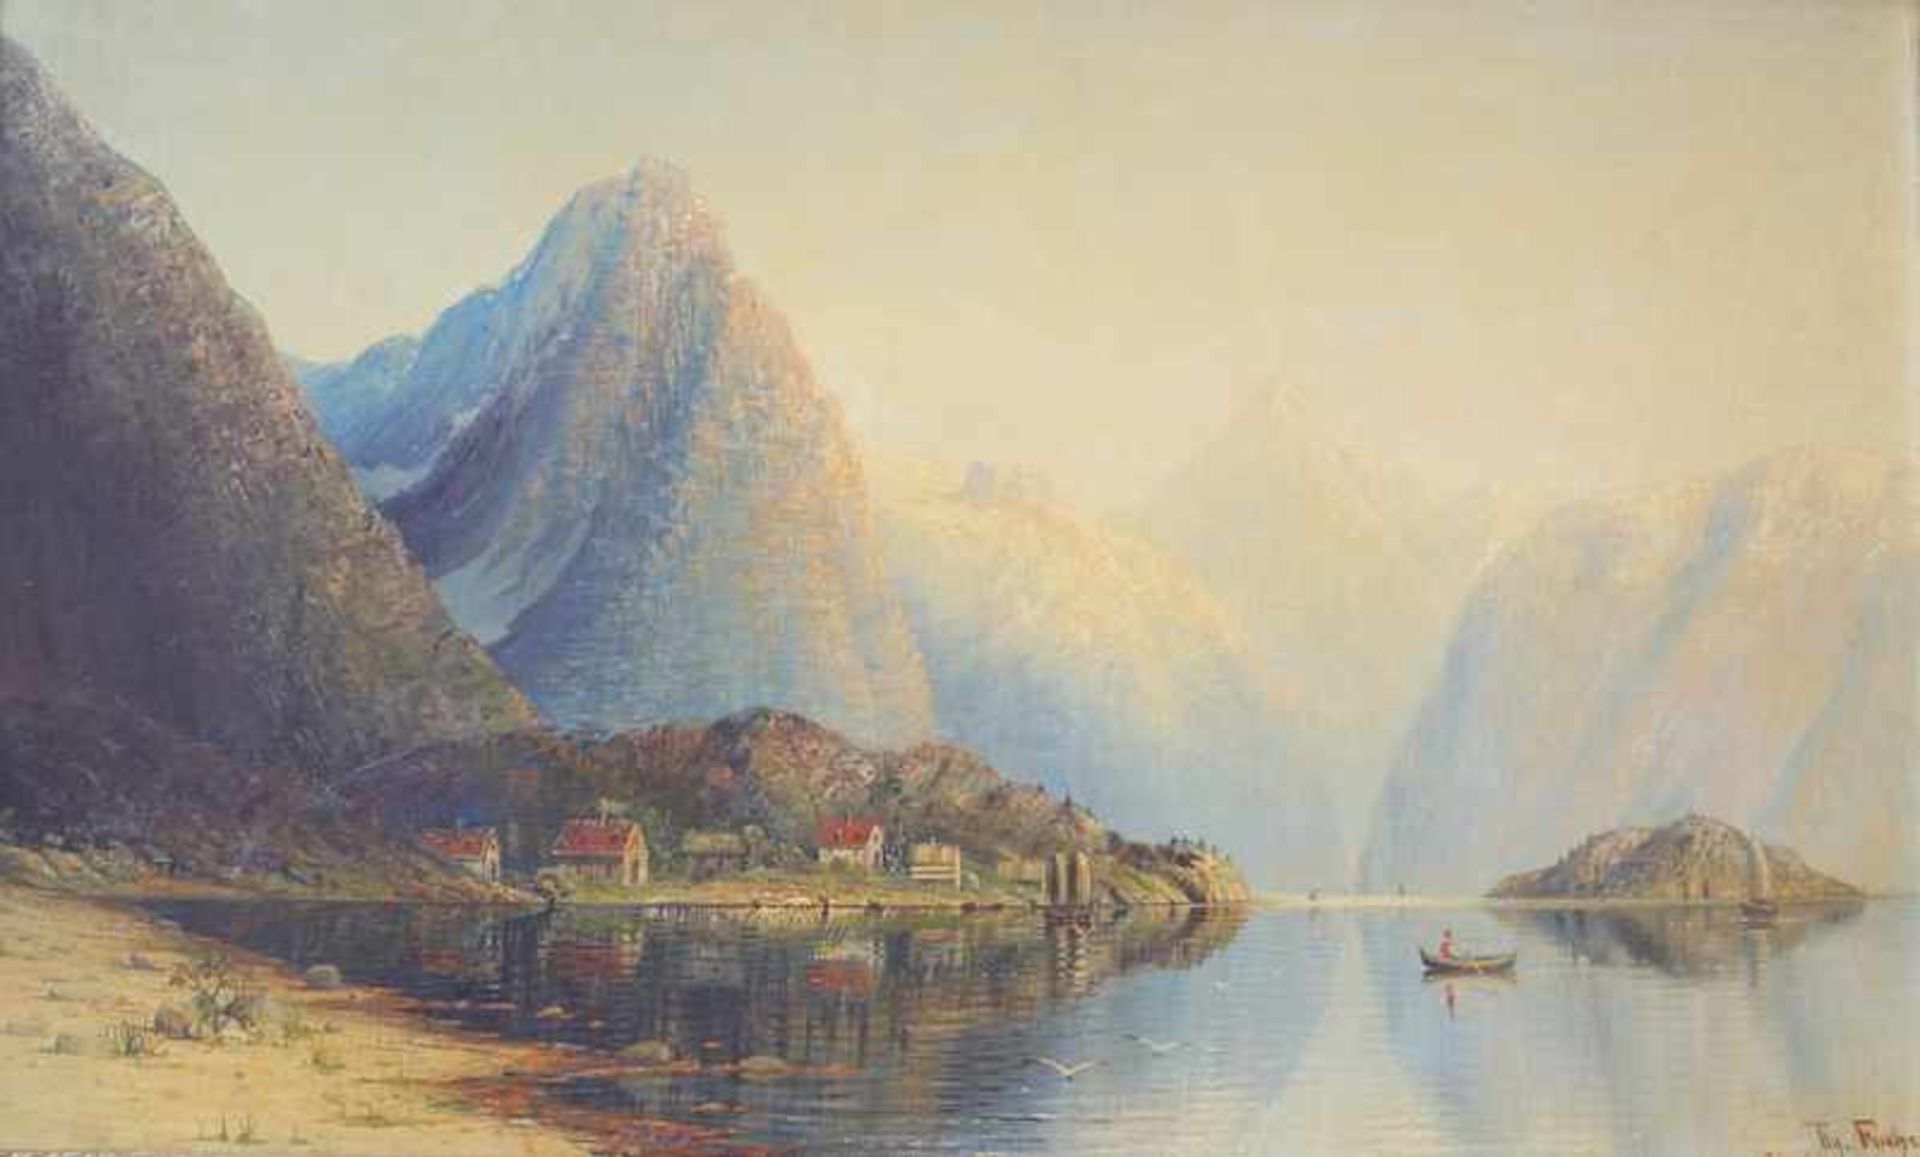 Therese Fuchs (1849-1898): Fjordlandschaft Mit Booten und Häusern vor Gebirgspanorama, Öl auf LW,